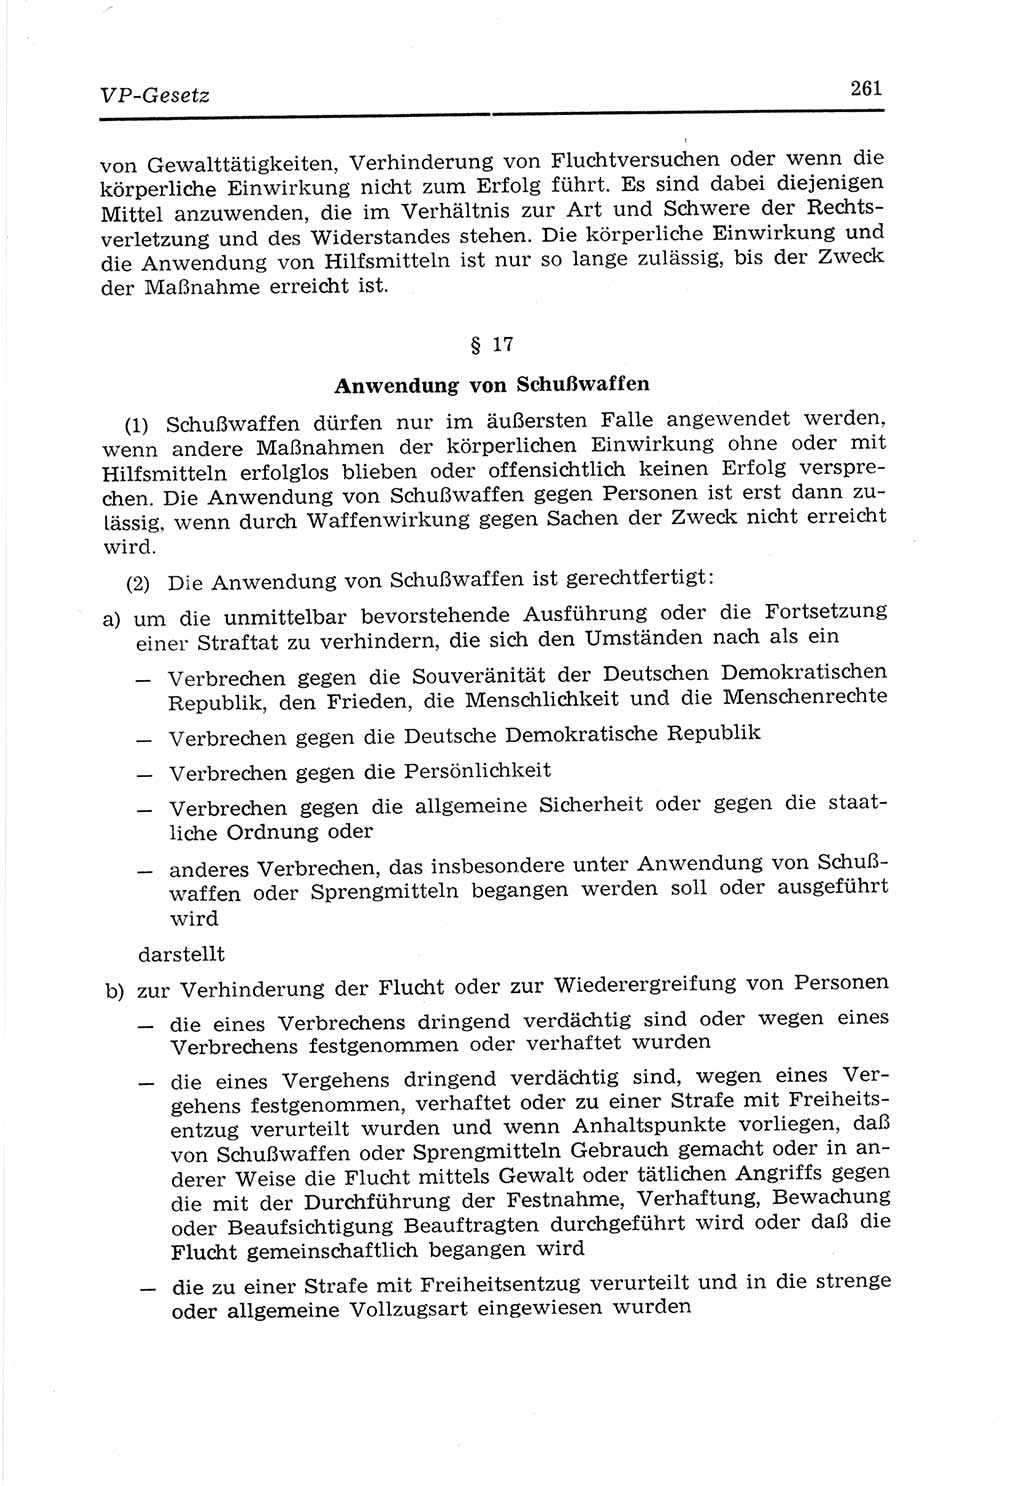 Strafvollzugs- und Wiedereingliederungsgesetz (SVWG) der Deutschen Demokratischen Republik (DDR) 1968, Seite 261 (SVWG DDR 1968, S. 261)